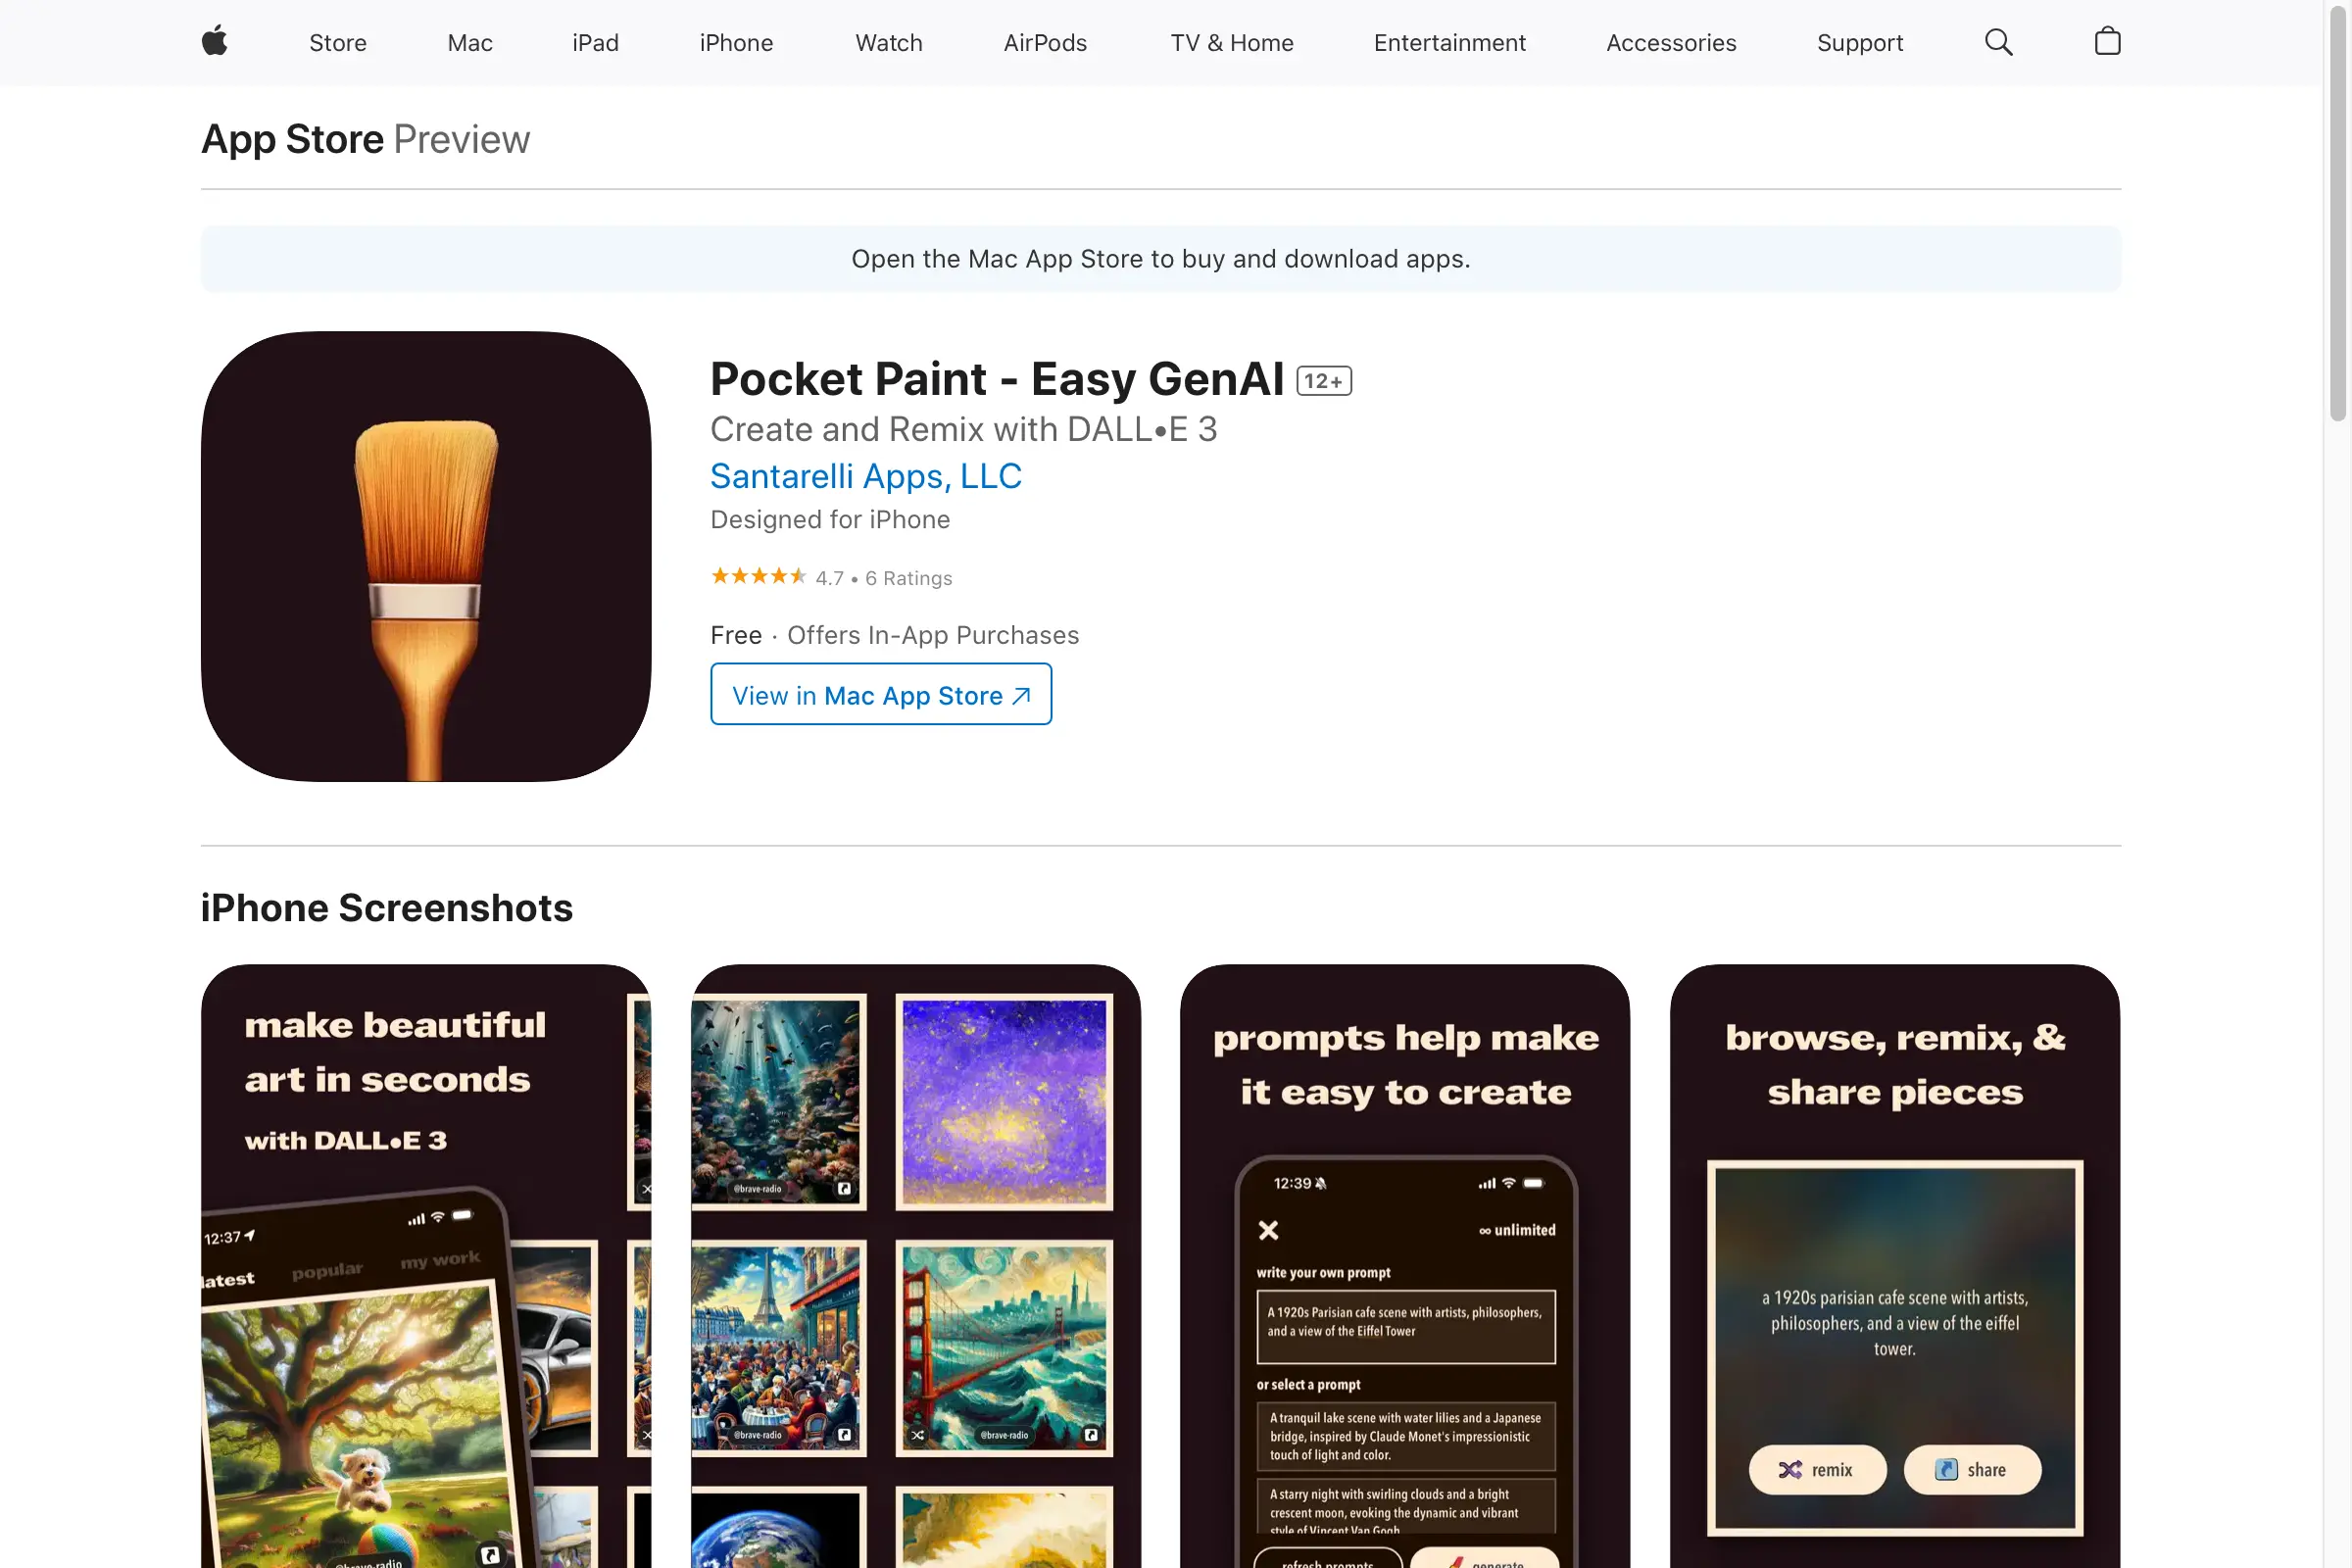 Pocket Paint - Easy GenAI